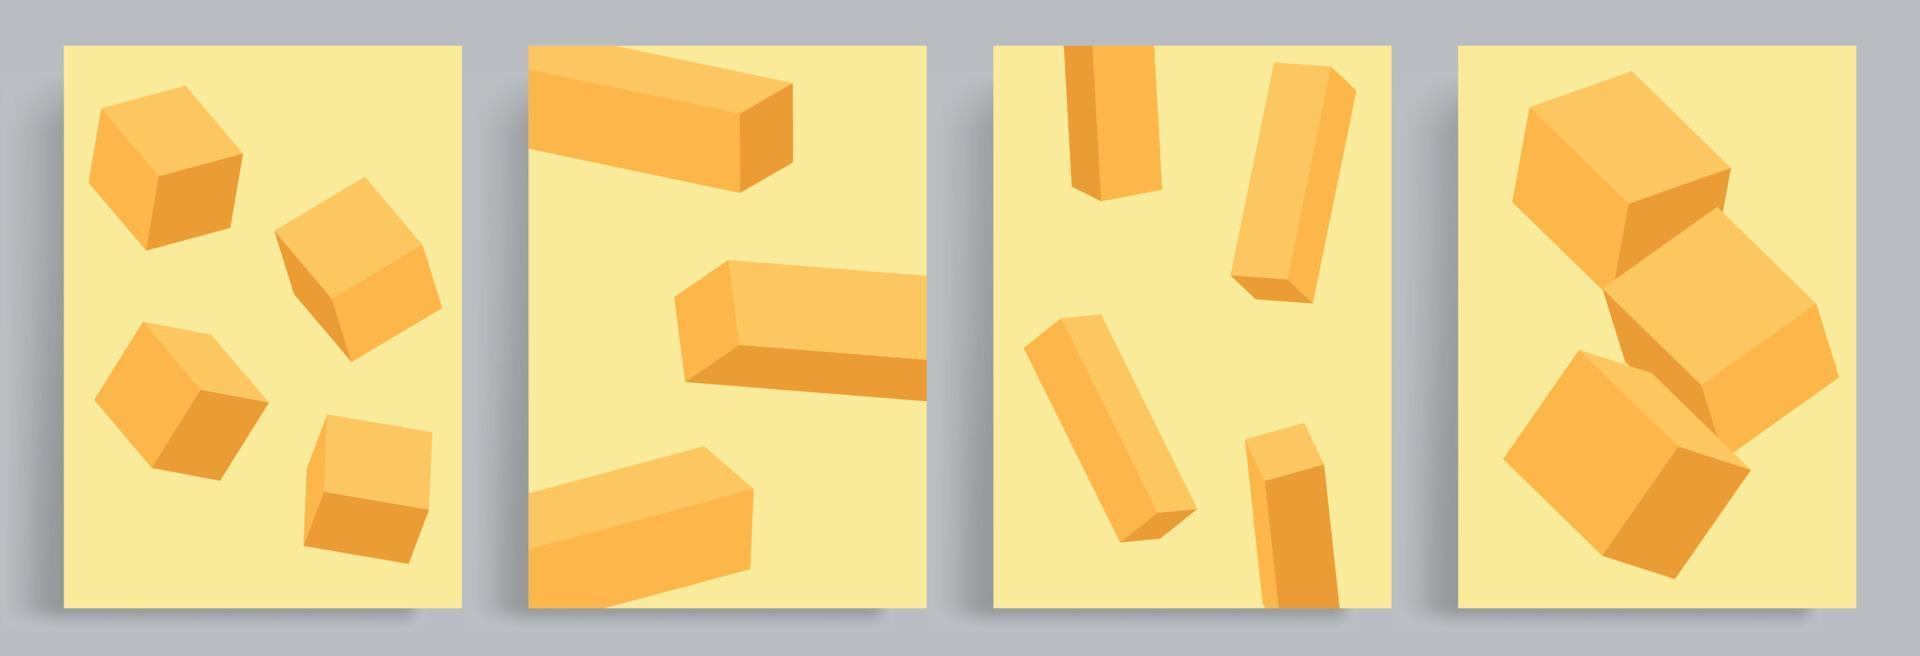 4 imposta di minimalista astratto 3d arancia blocchi. adatto per manifesti, libro copertine, opuscoli, riviste, volantini, libretti. vettore